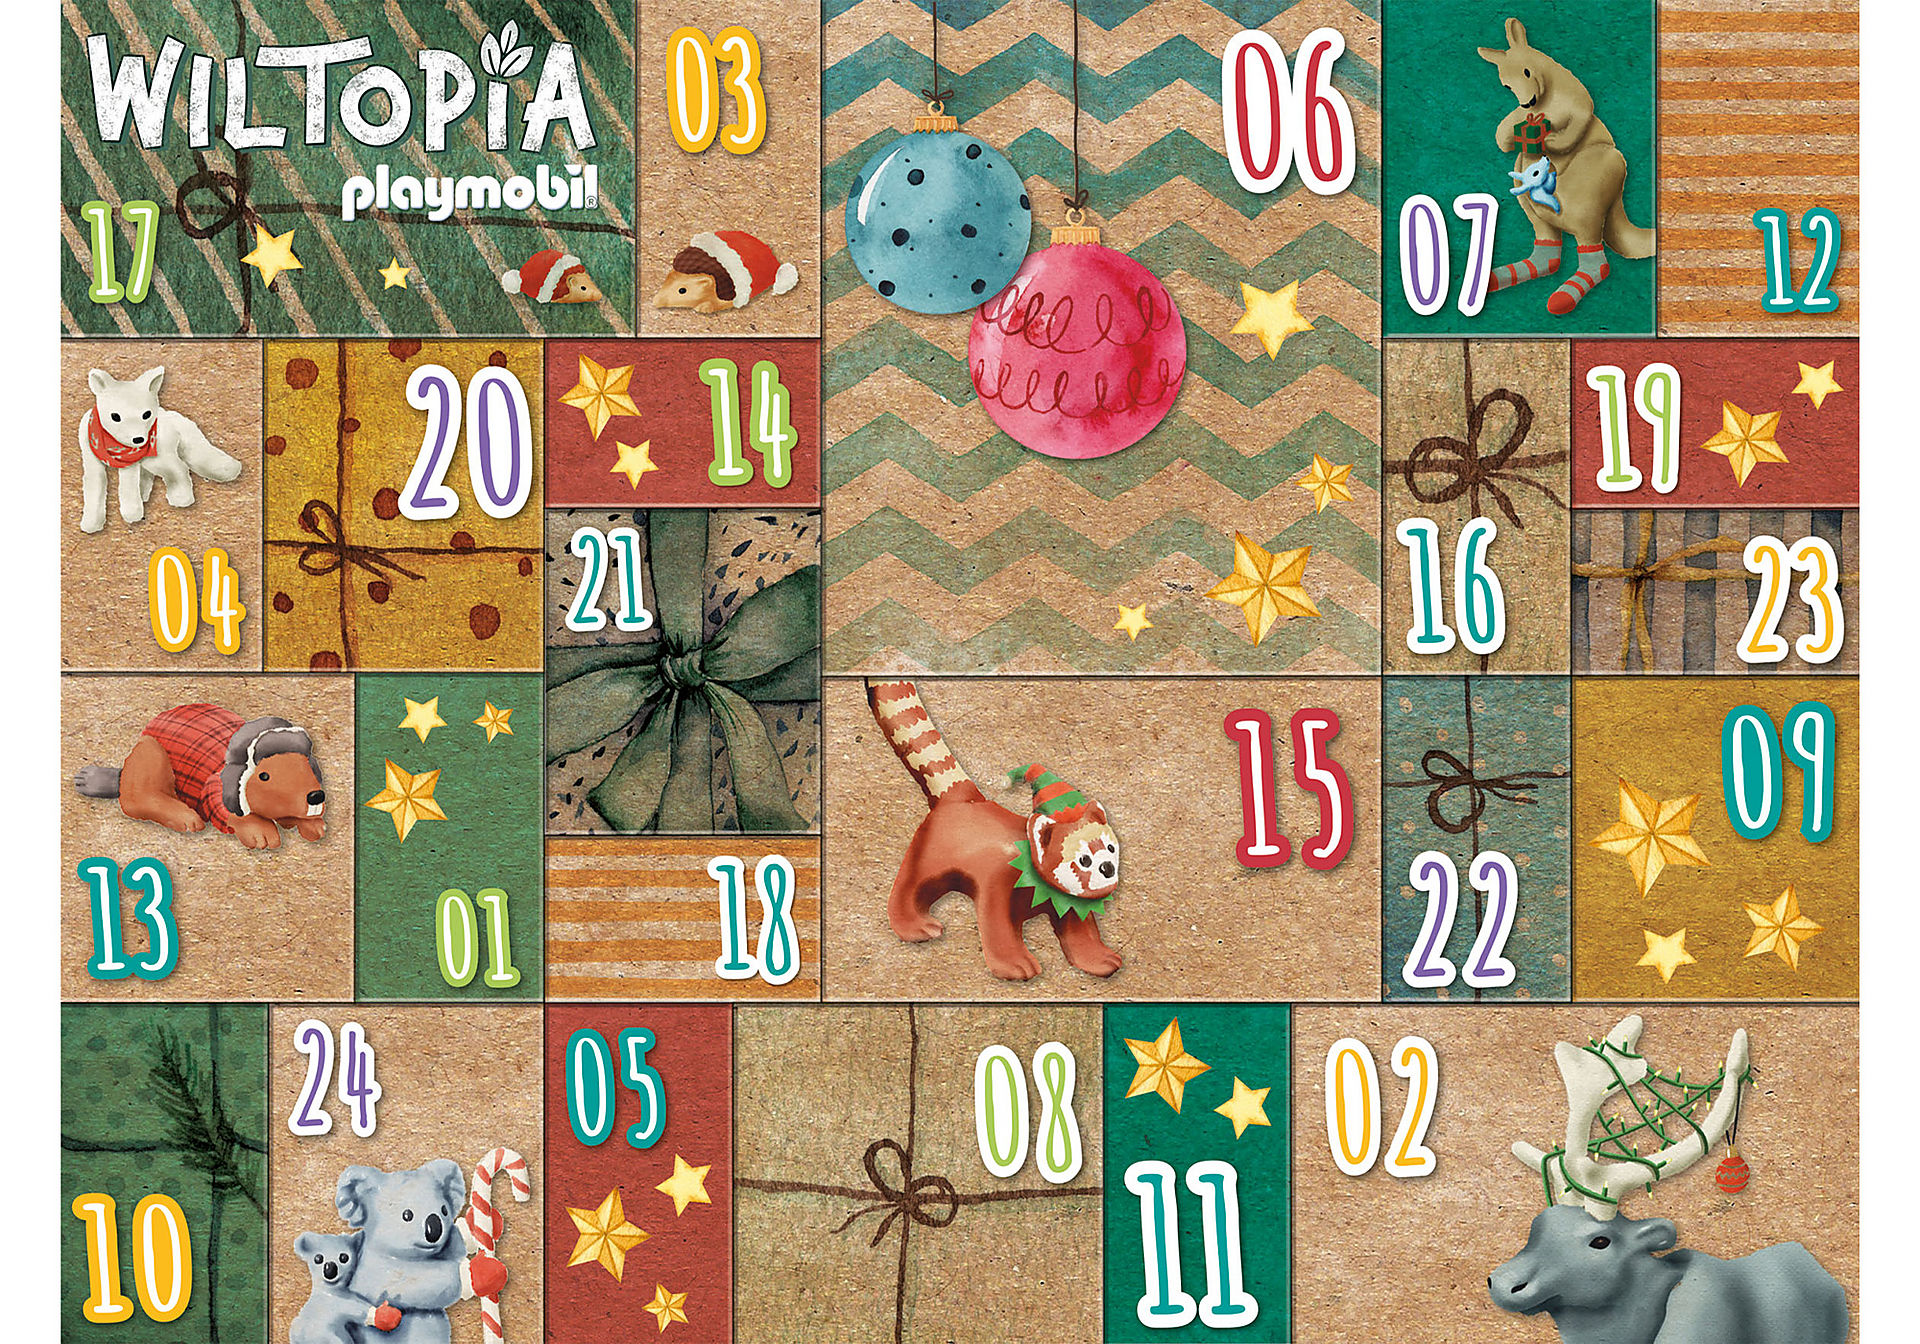 71006 Wiltopia - DIY Calendário do Advento - Via zoom image3